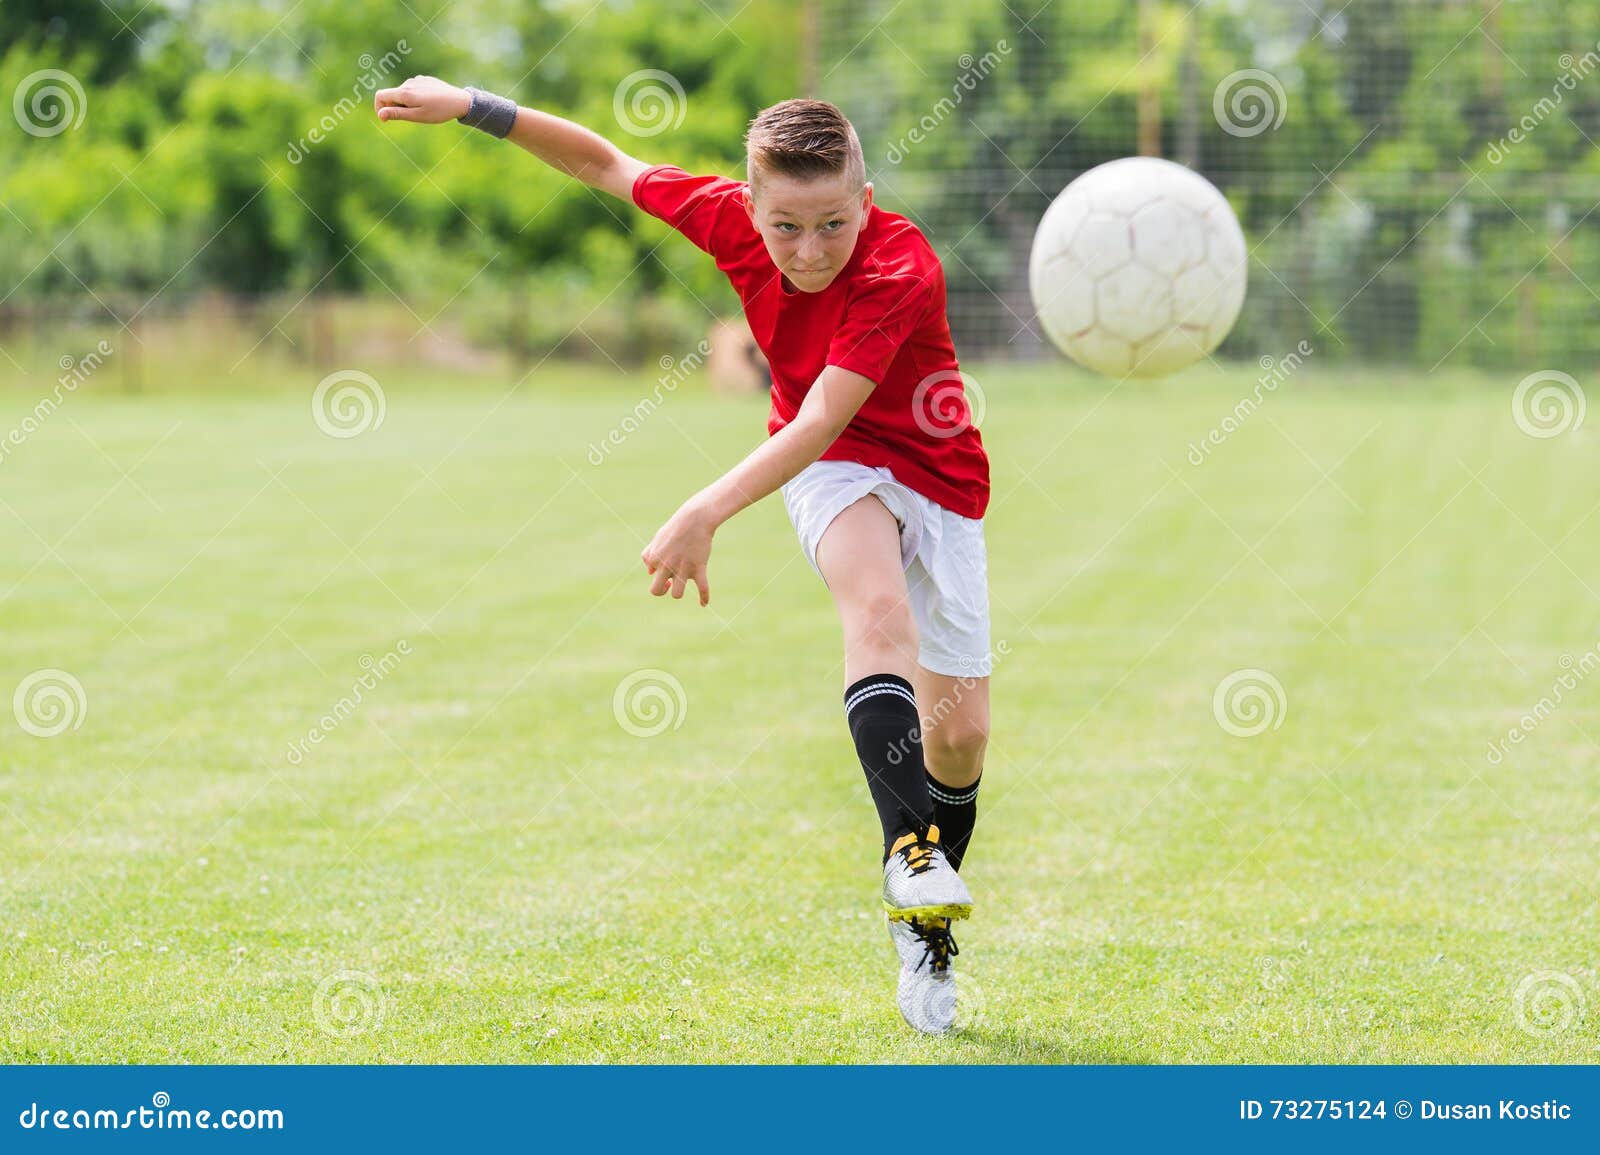 Удар мячом ребенку. Мальчик пинает мяч. Удар по мячу дети. Мальчик футболист. Футболист пинает мяч.